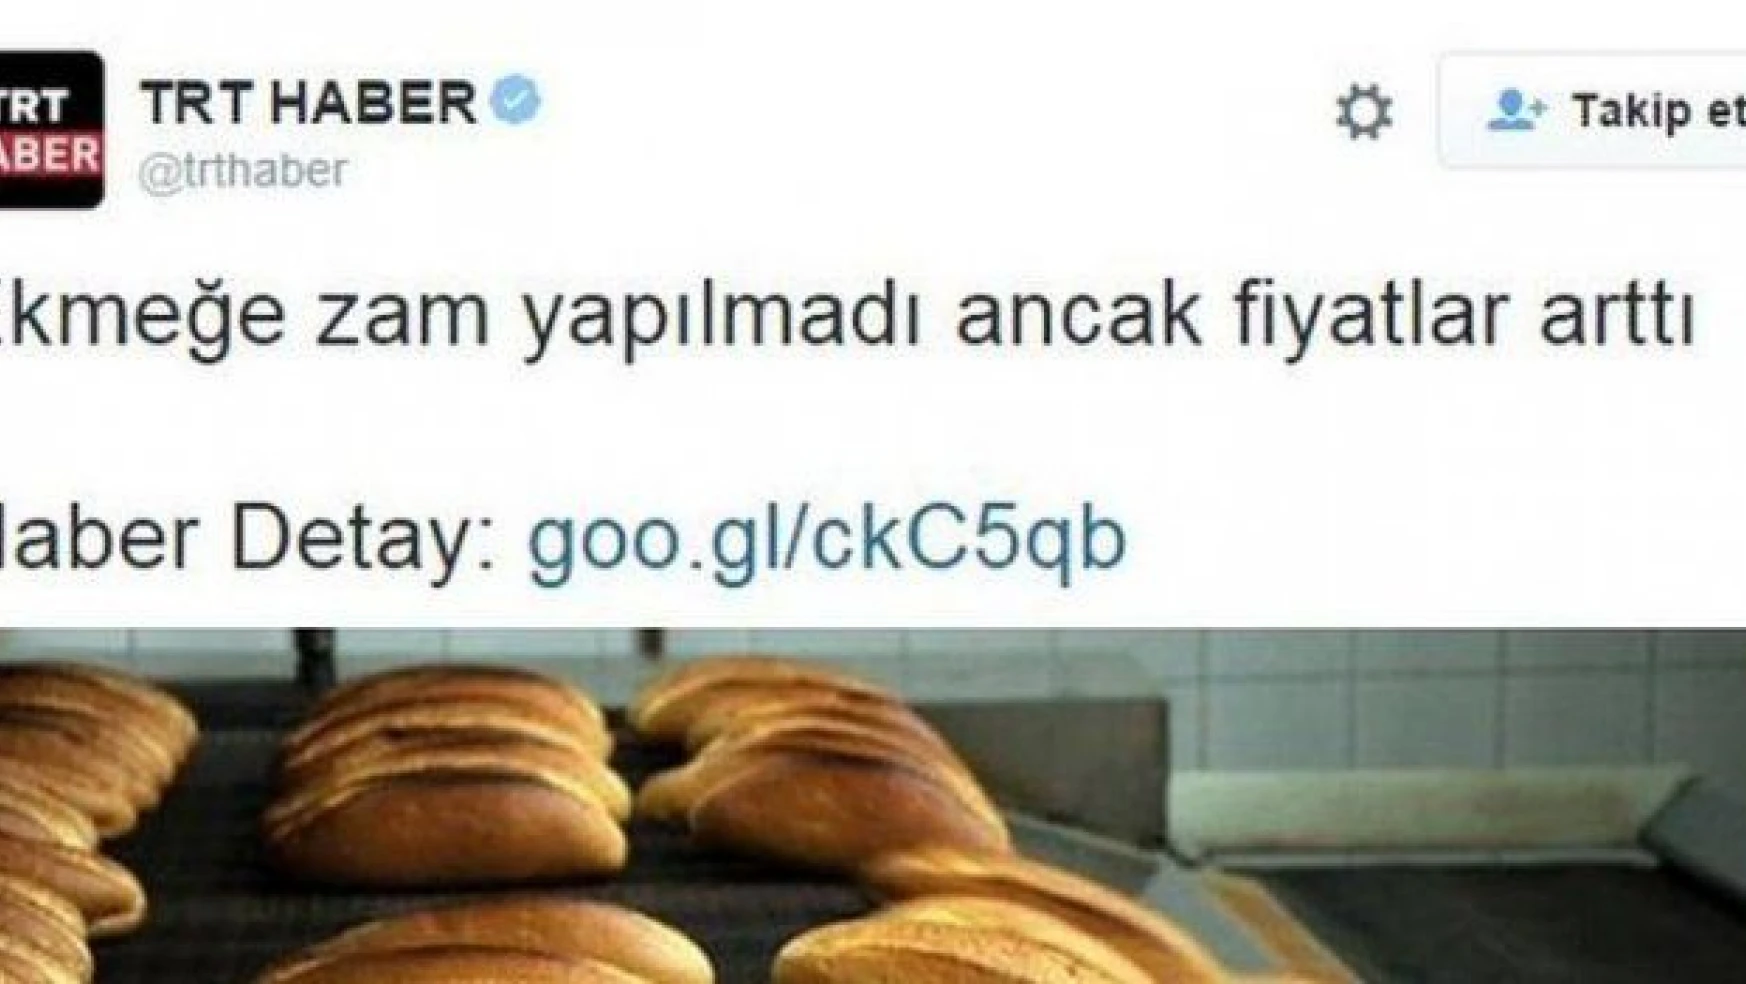 TRT Haber twitter'da TT oldu, ortalık yıkıldı